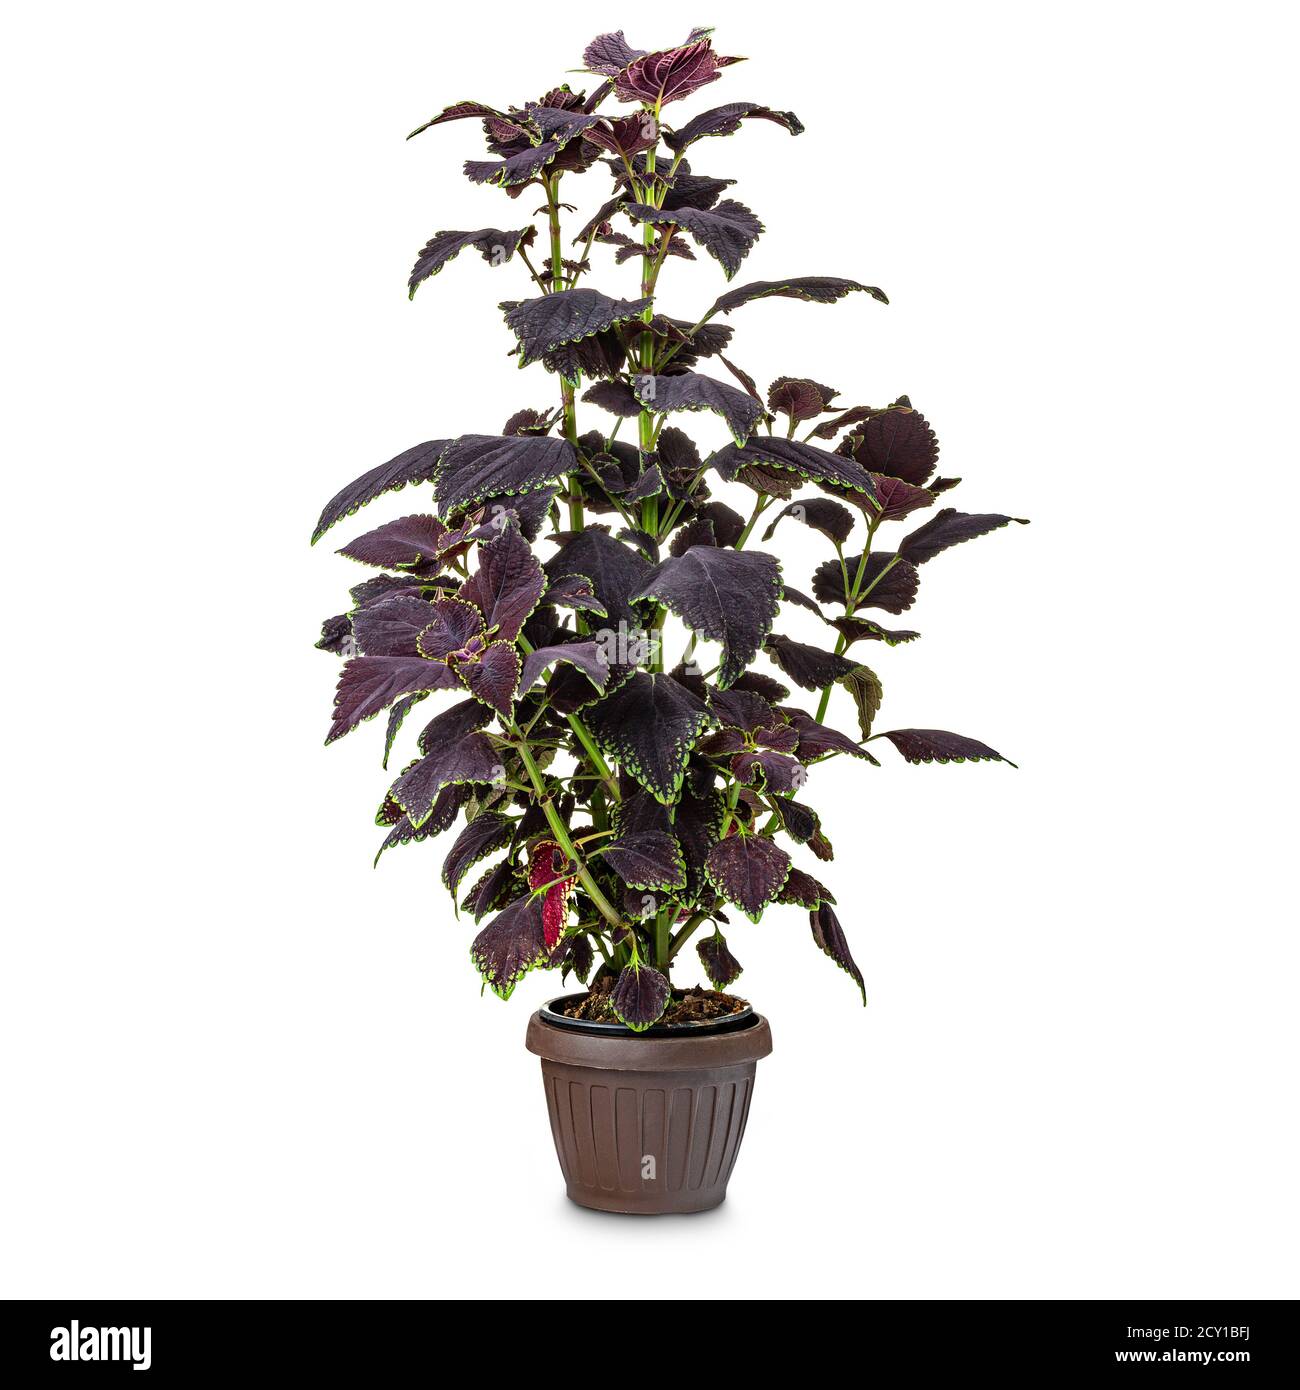 Foglie della pianta Coleus colore scuro con una luce bordo verde sul bordo delle lamelle Foto Stock